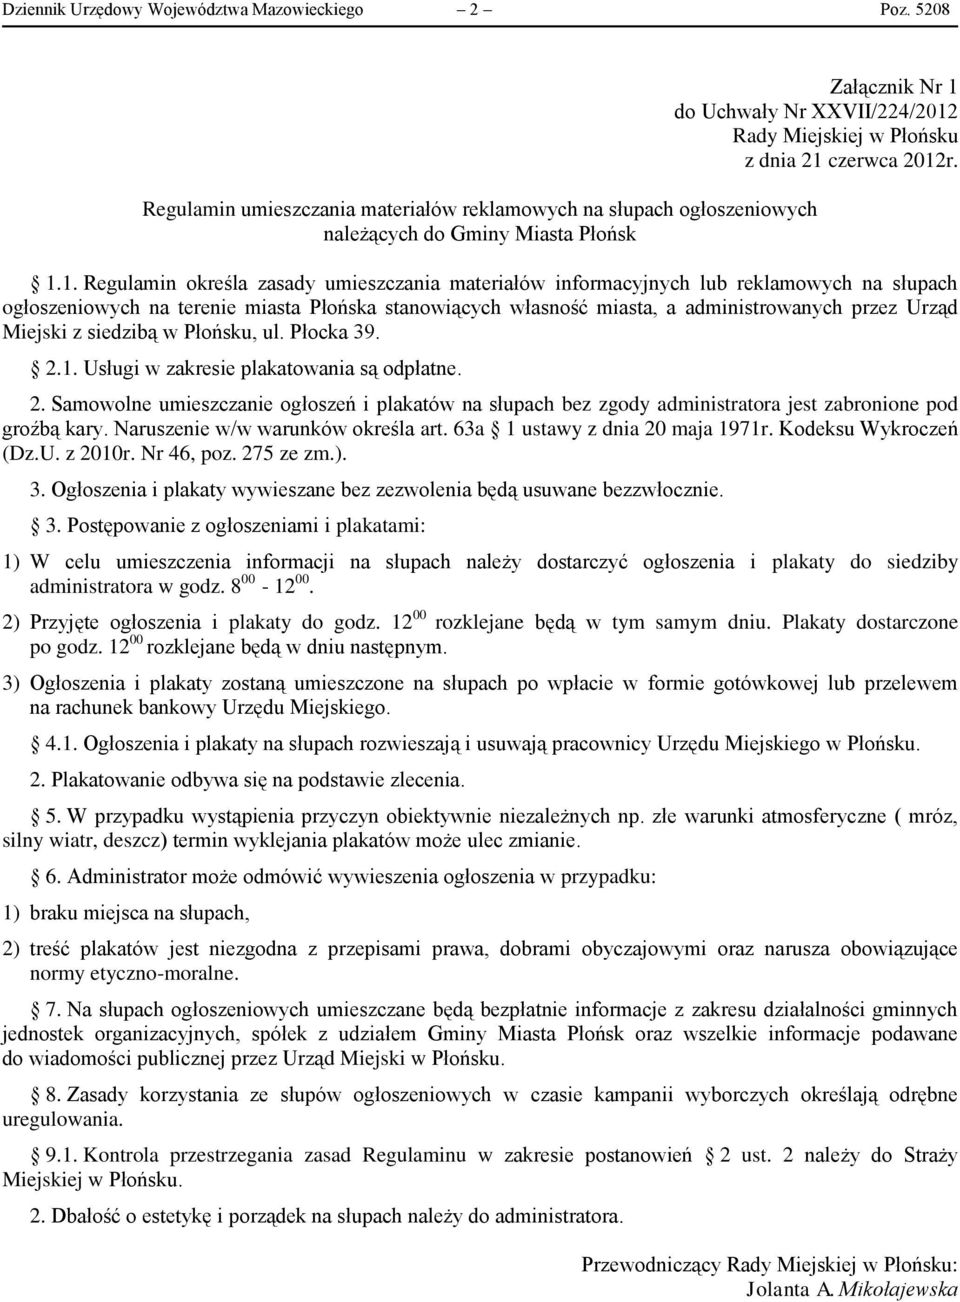 1. Regulamin określa zasady umieszczania materiałów informacyjnych lub reklamowych na słupach ogłoszeniowych na terenie miasta Płońska stanowiących własność miasta, a administrowanych przez Urząd